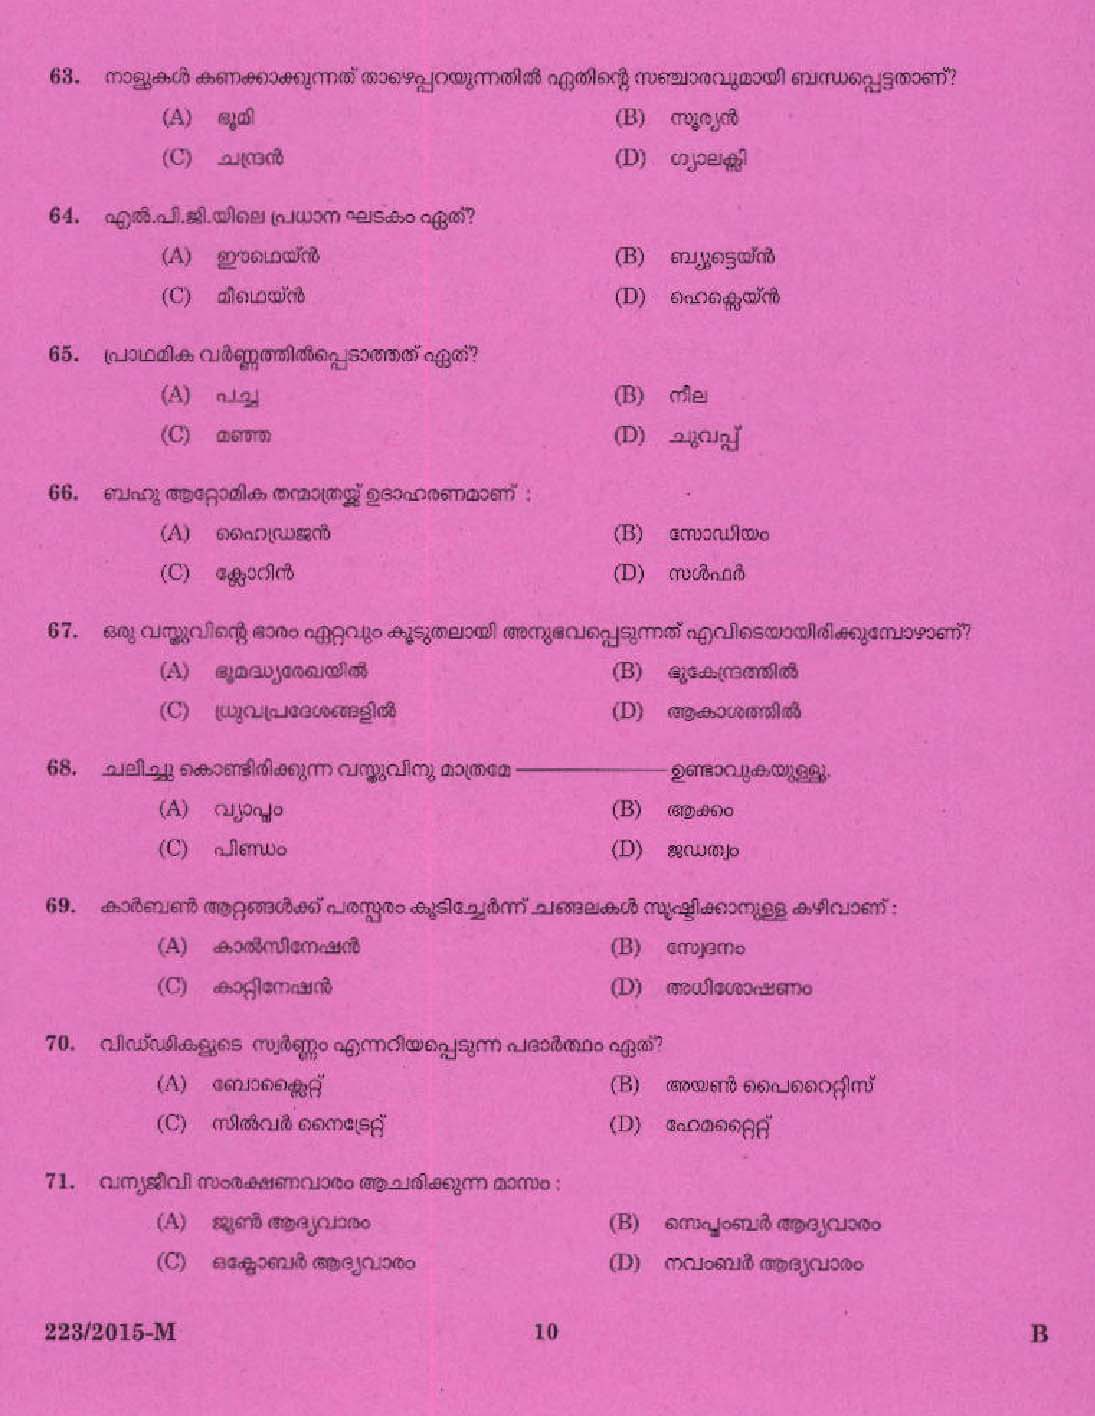 Kerala PSC Boat Driver Exam 2015 Question Paper Code 2232015 M 8